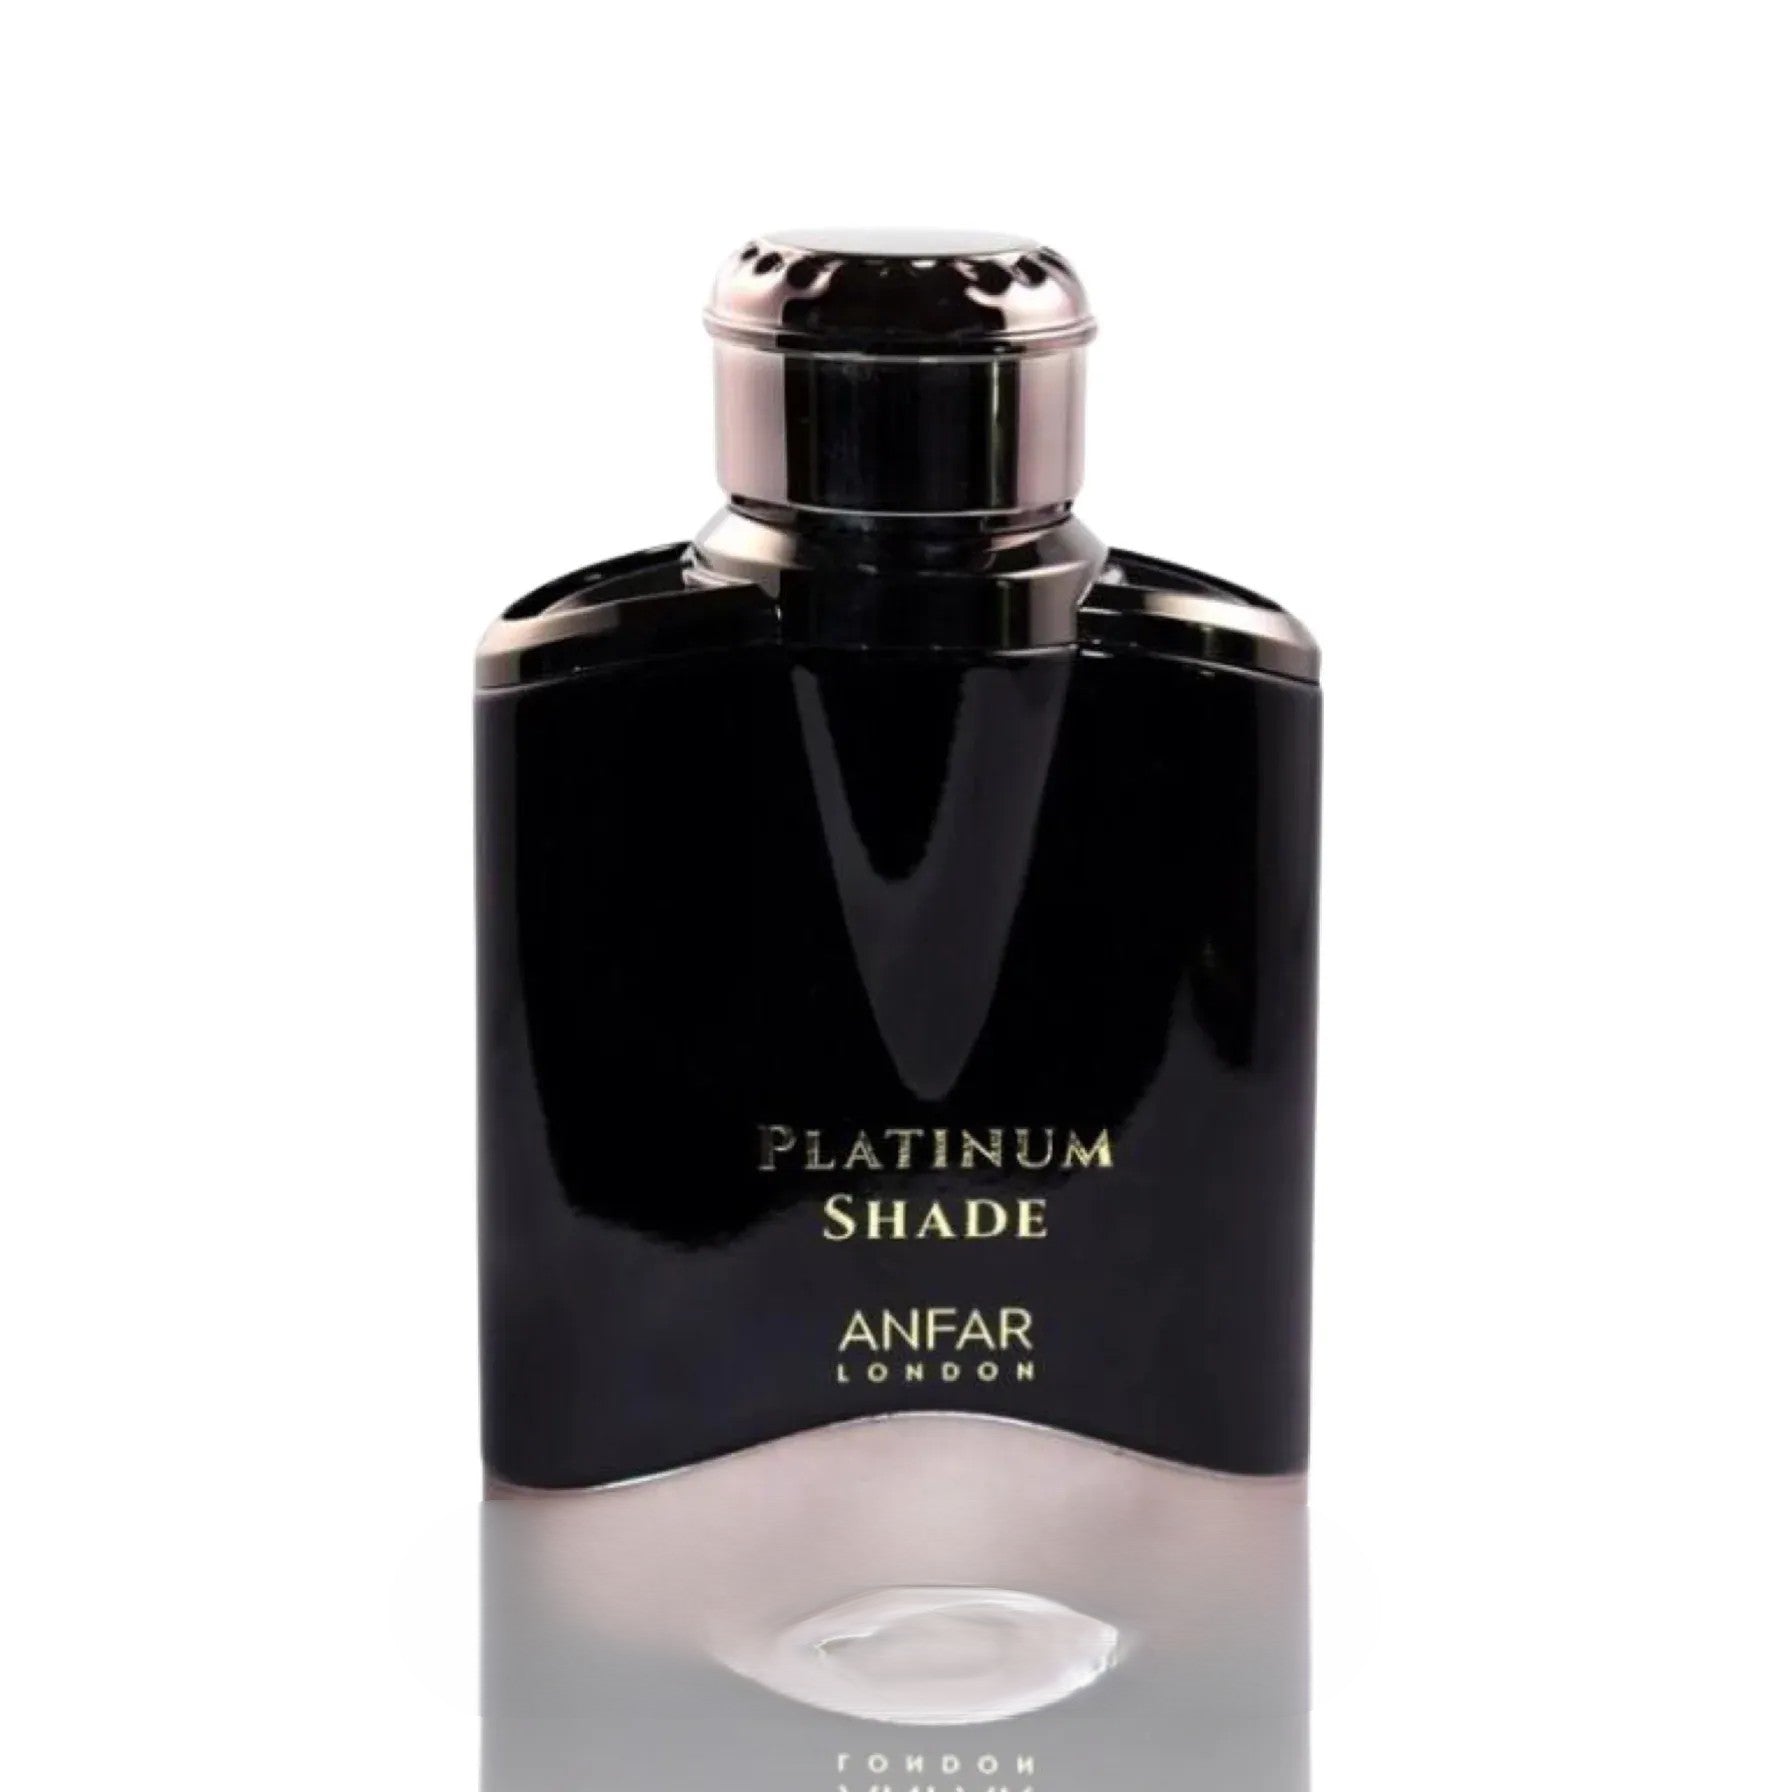 Platinum Shade Pour Homme | Eau De Parfum 100ml | by Anfar London